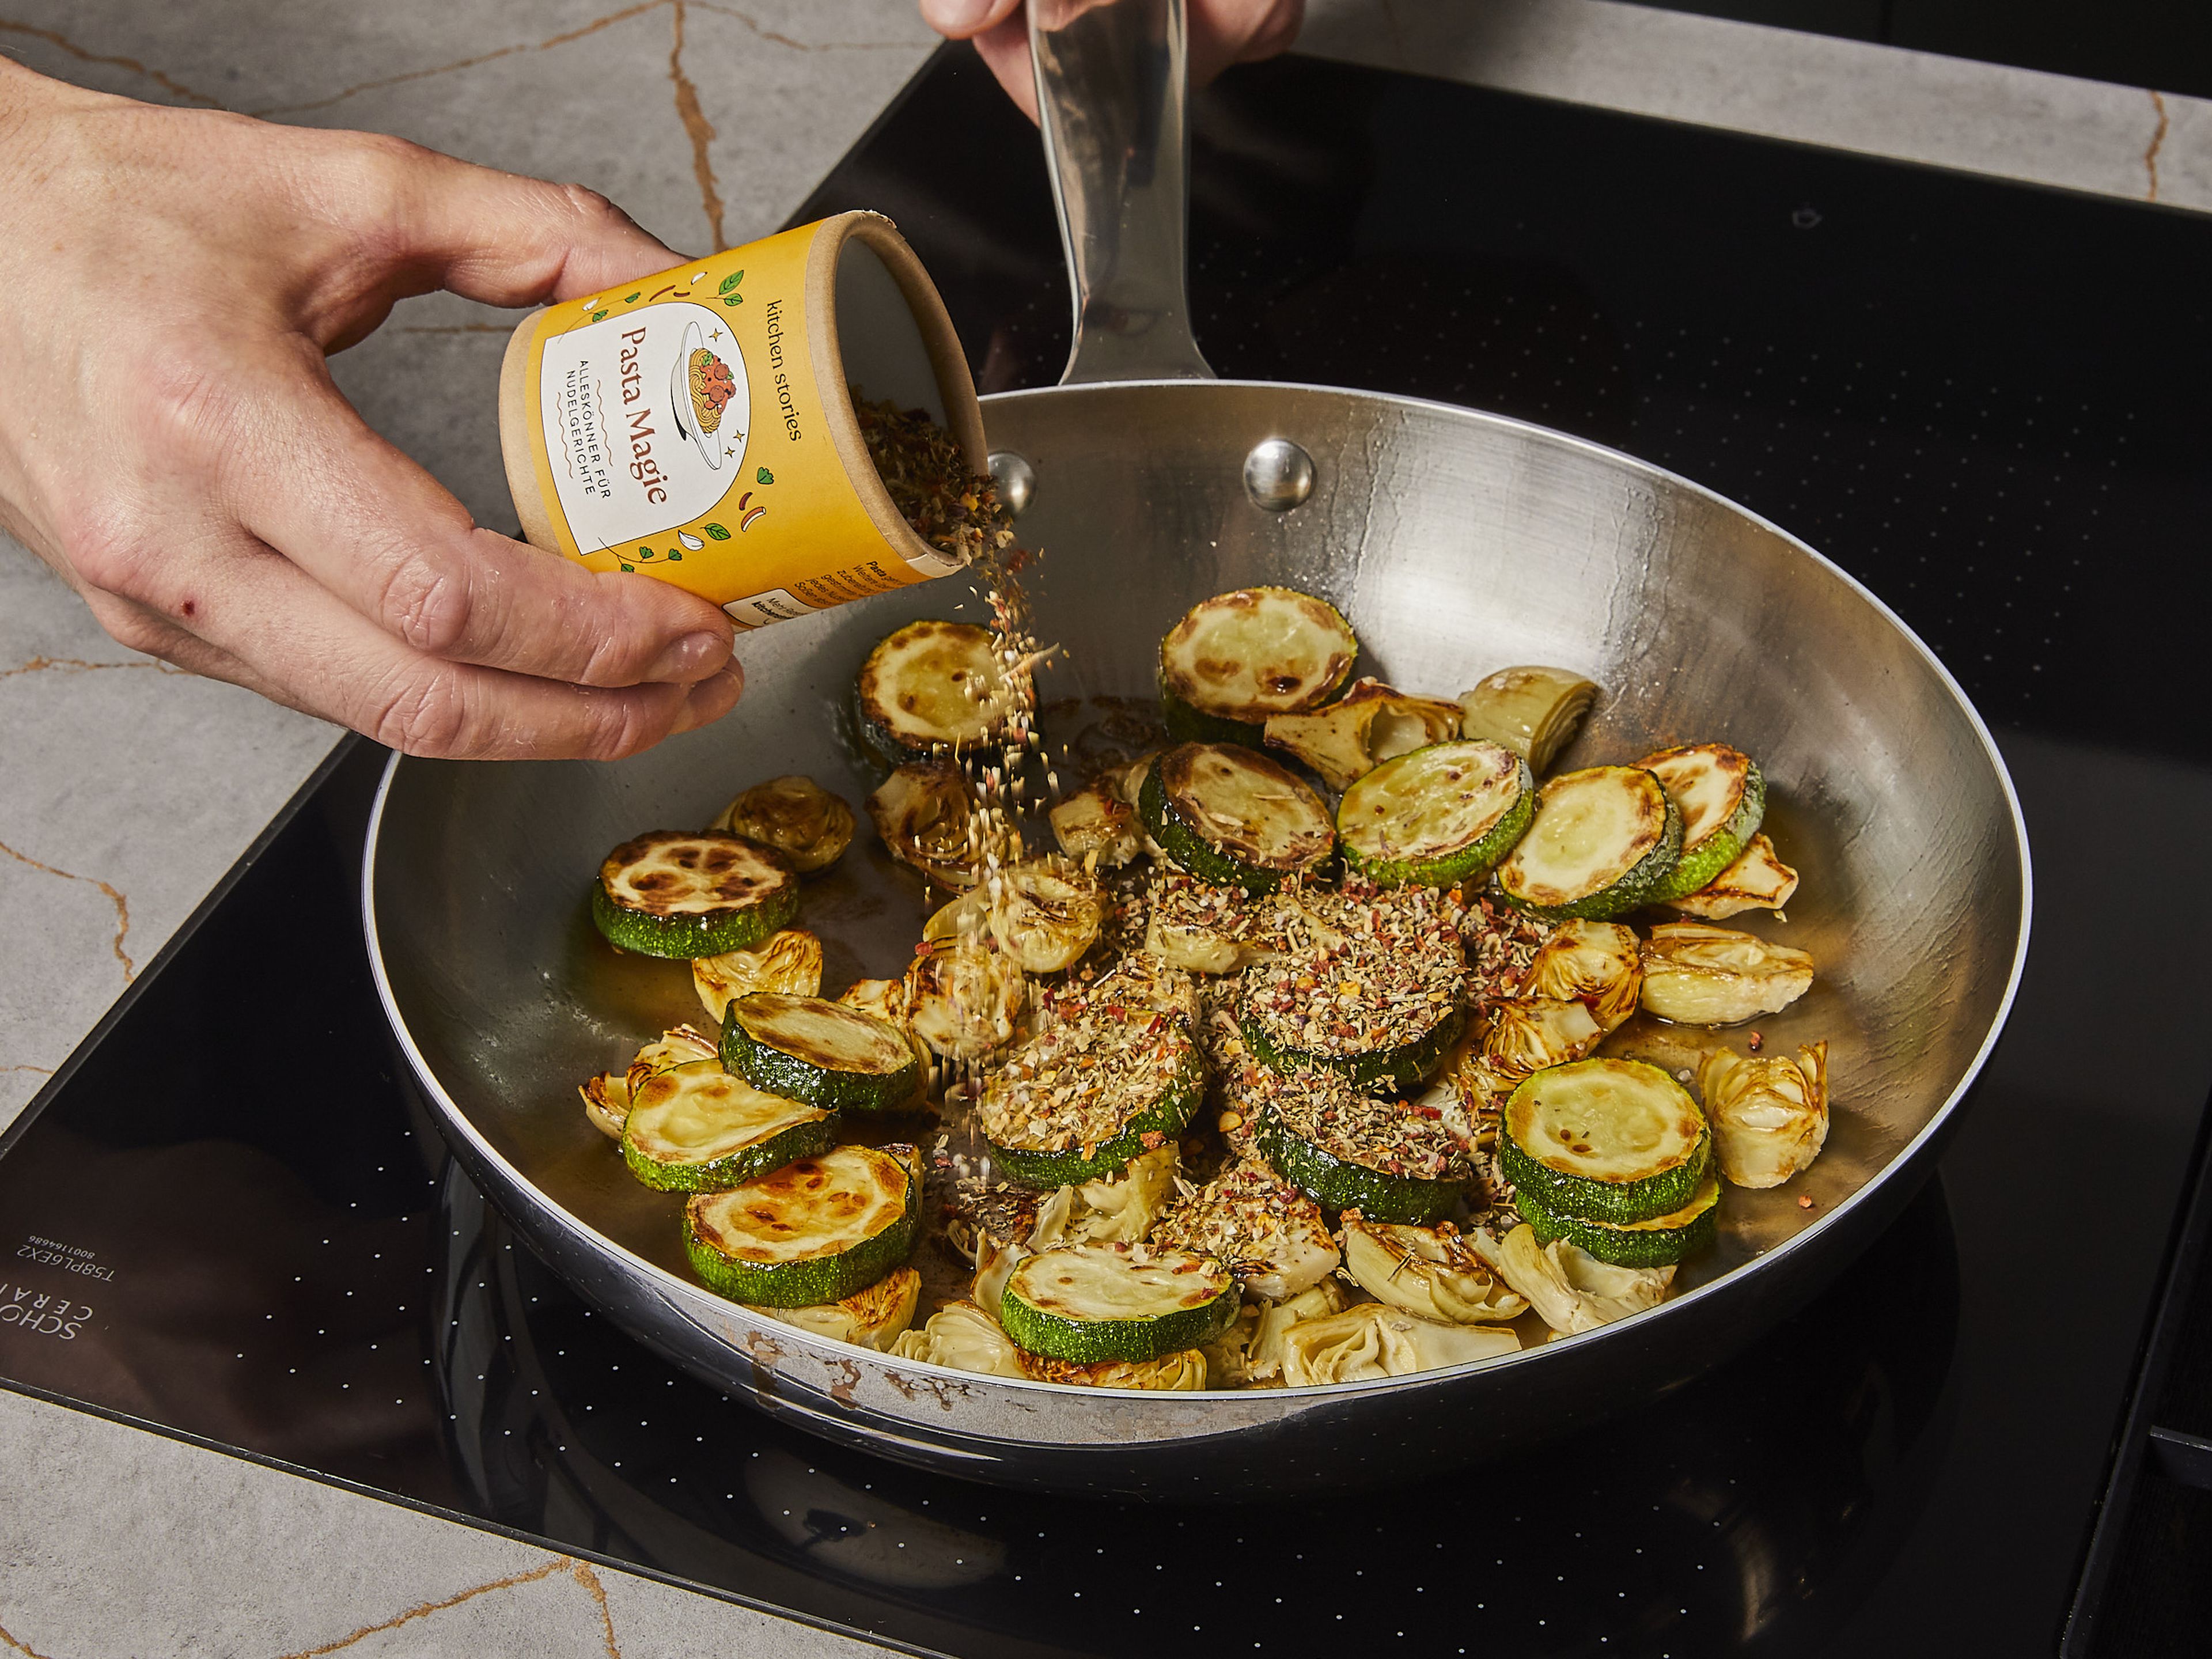 Lasagneblätter in mundgerechte Stücke brechen, in das kochende Wasser geben und in ca. 8–9 Min. bissfest kochen. Durch ein Sieb abgießen und mit etwas Olivenöl vermischen, damit sie nicht zusammenkleben, und abkühlen lassen. Währenddessen etwas Olivenöl in einer Pfanne erhitzen. Artischocken und Zucchini dazugeben und mit Salz und Pfeffer würzen. Zusammen ca. 4–6 Min. anbraten, bis das Gemüse anfängt zu bräunen, dann mit der PASTA MAGIE Gewürzmischung abschmecken und gut vermischen.